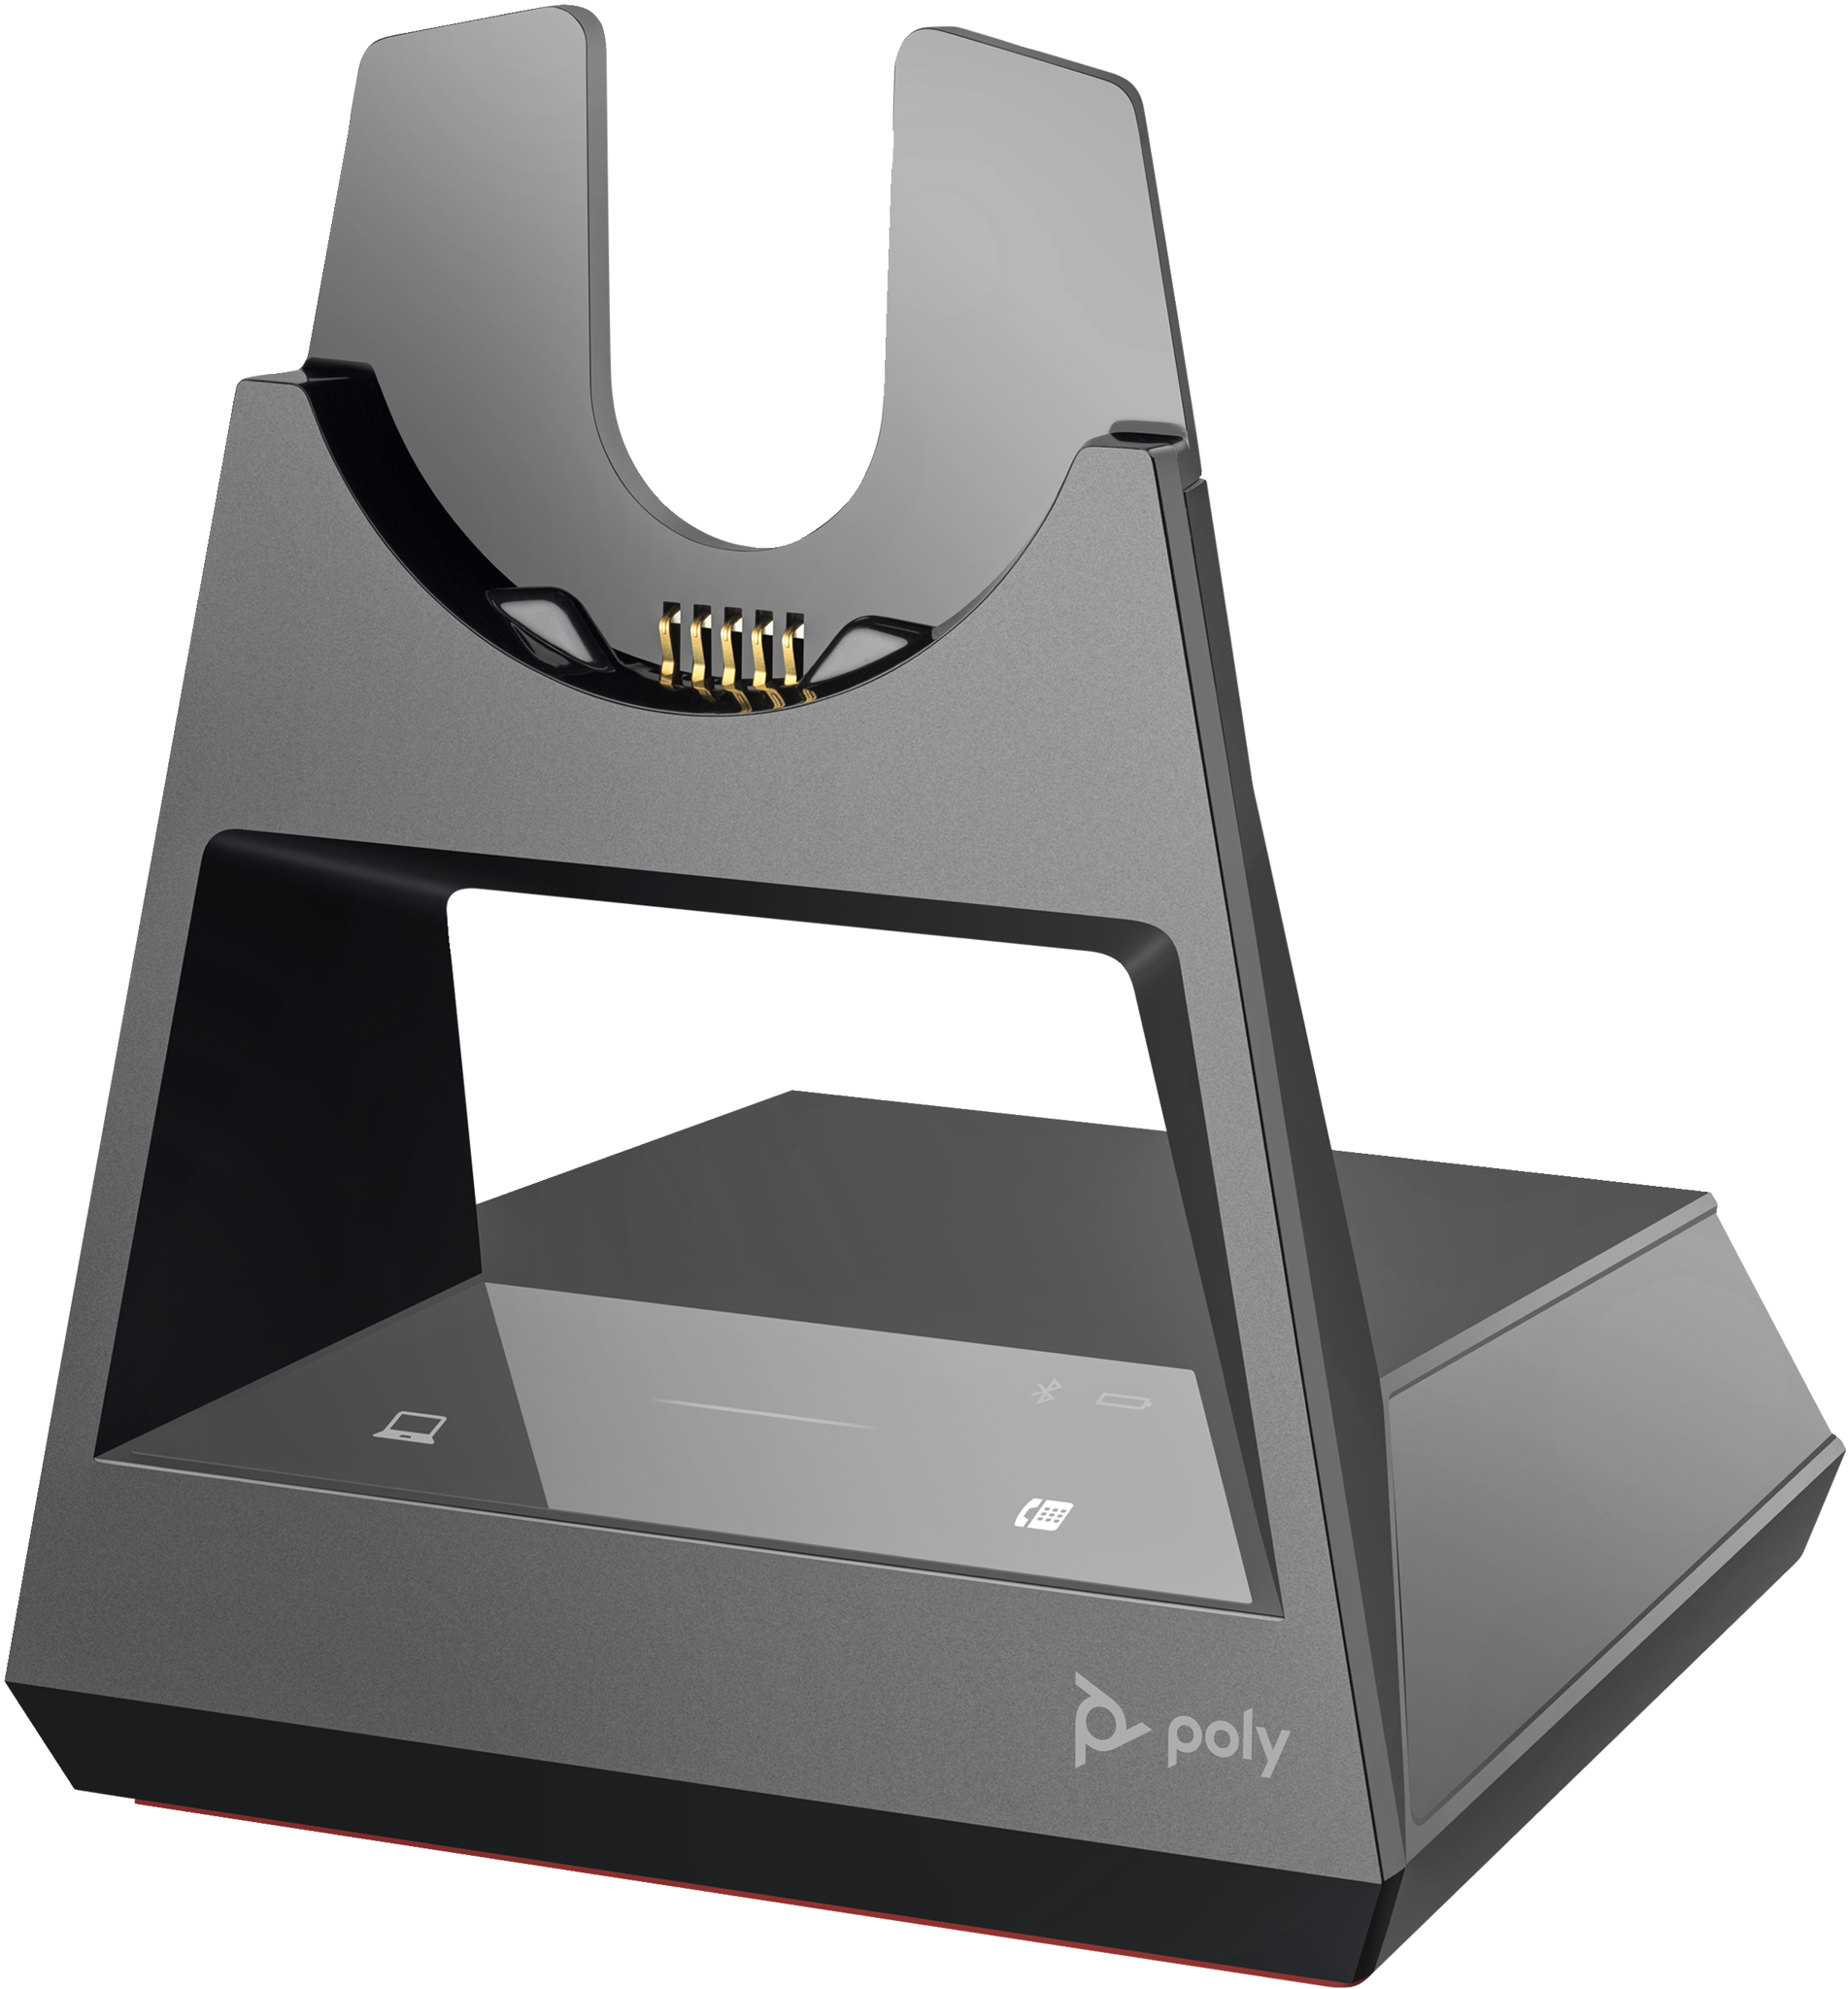 Bild von HP POLY Voyager Office-Basis, Headset-Ständer, 350 g, Schwarz